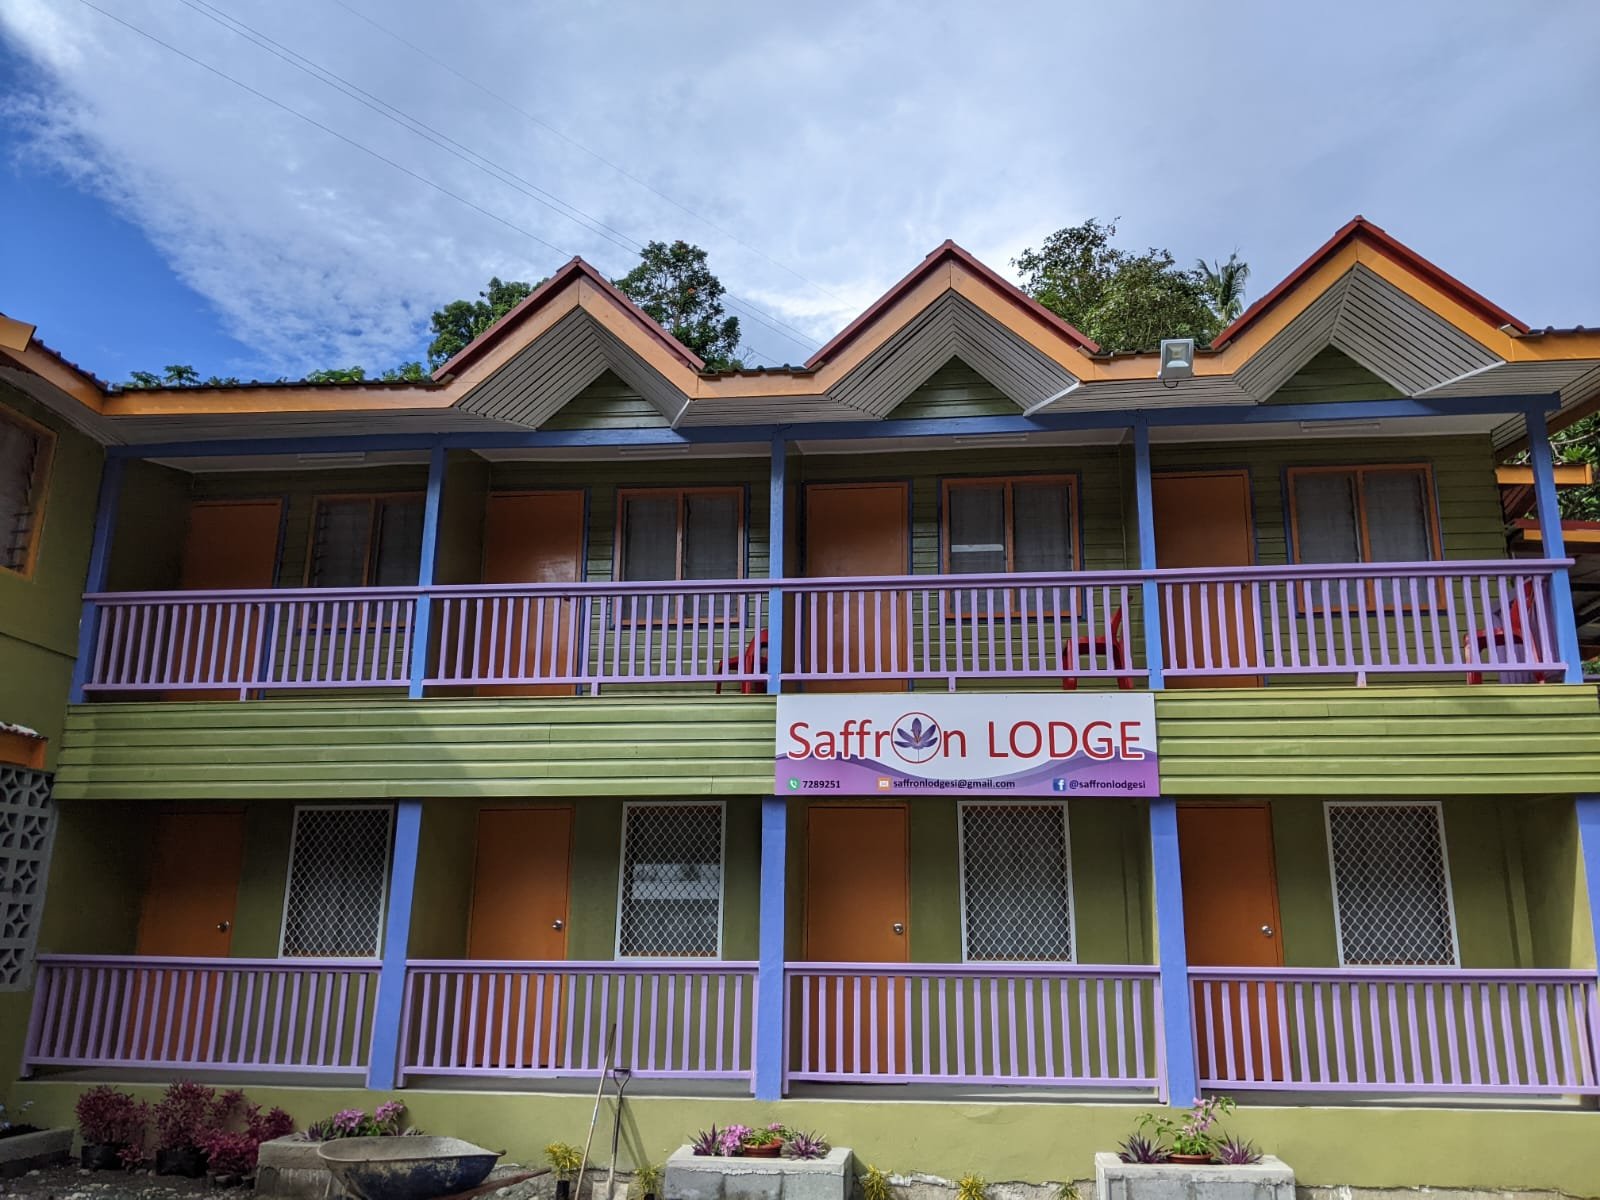 Saffron Lodge